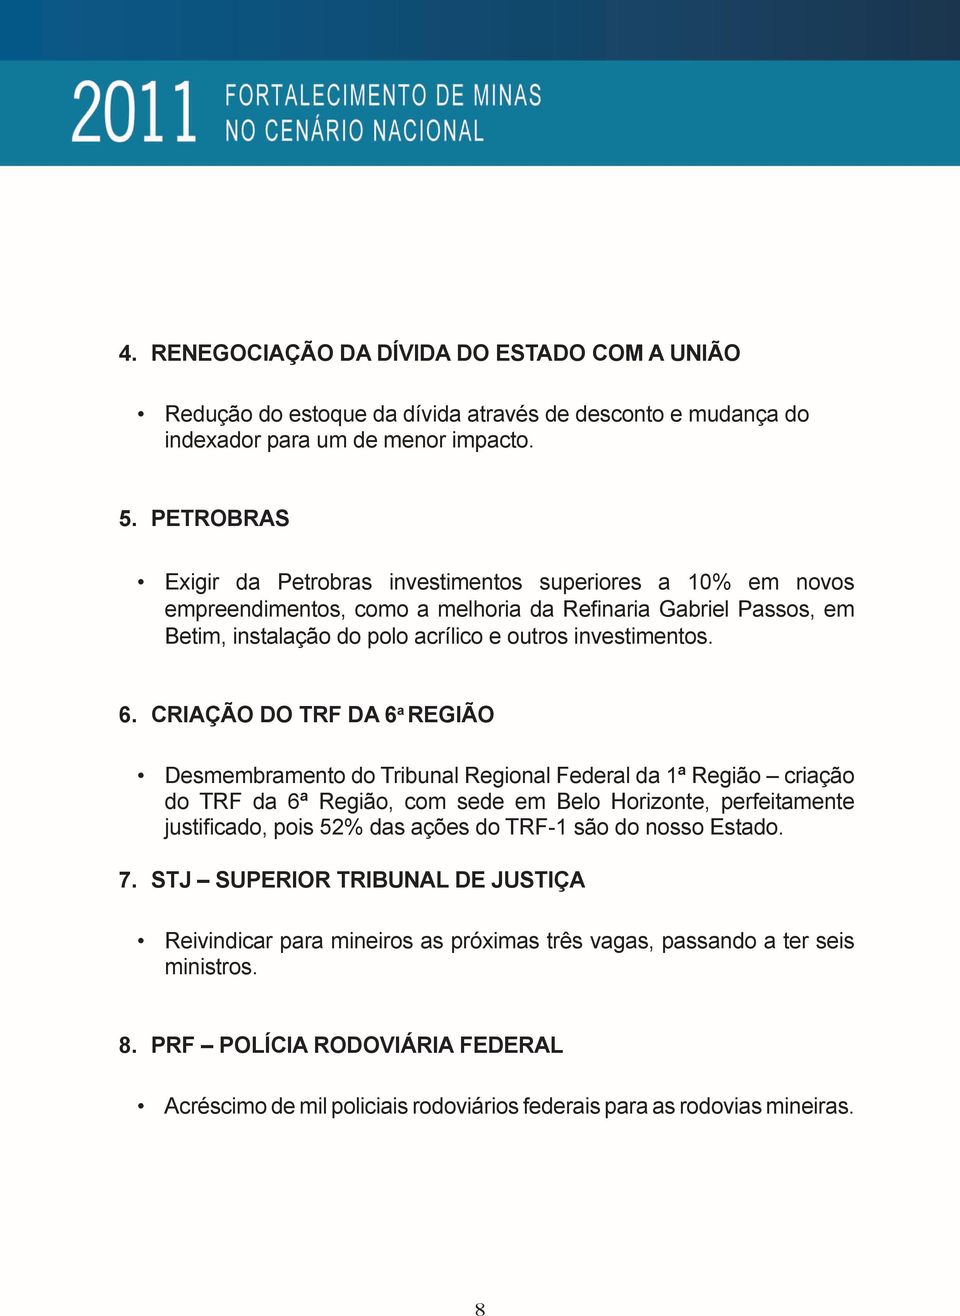 CRIAÇÃO DO TRF DA 6 a REGIÃO Desmembramento do Tribunal Regional Federal da 1ª Região criação do TRF da 6ª Região, com sede em Belo Horizonte, perfeitamente justificado, pois 52% das ações do TRF-1